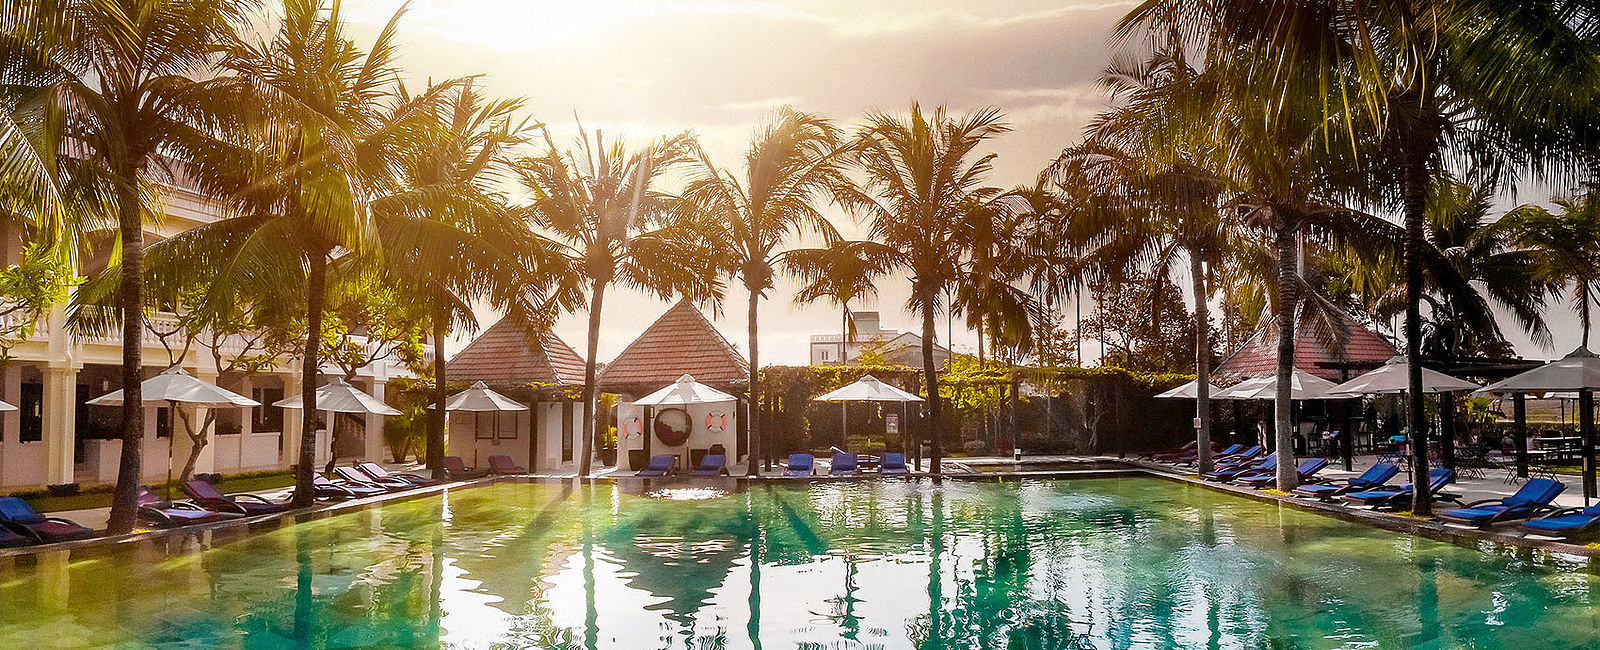 HOTELTEST
 Anantara Hoi An Resort 
 Suite Dreams im Kolonialen Ambiente 